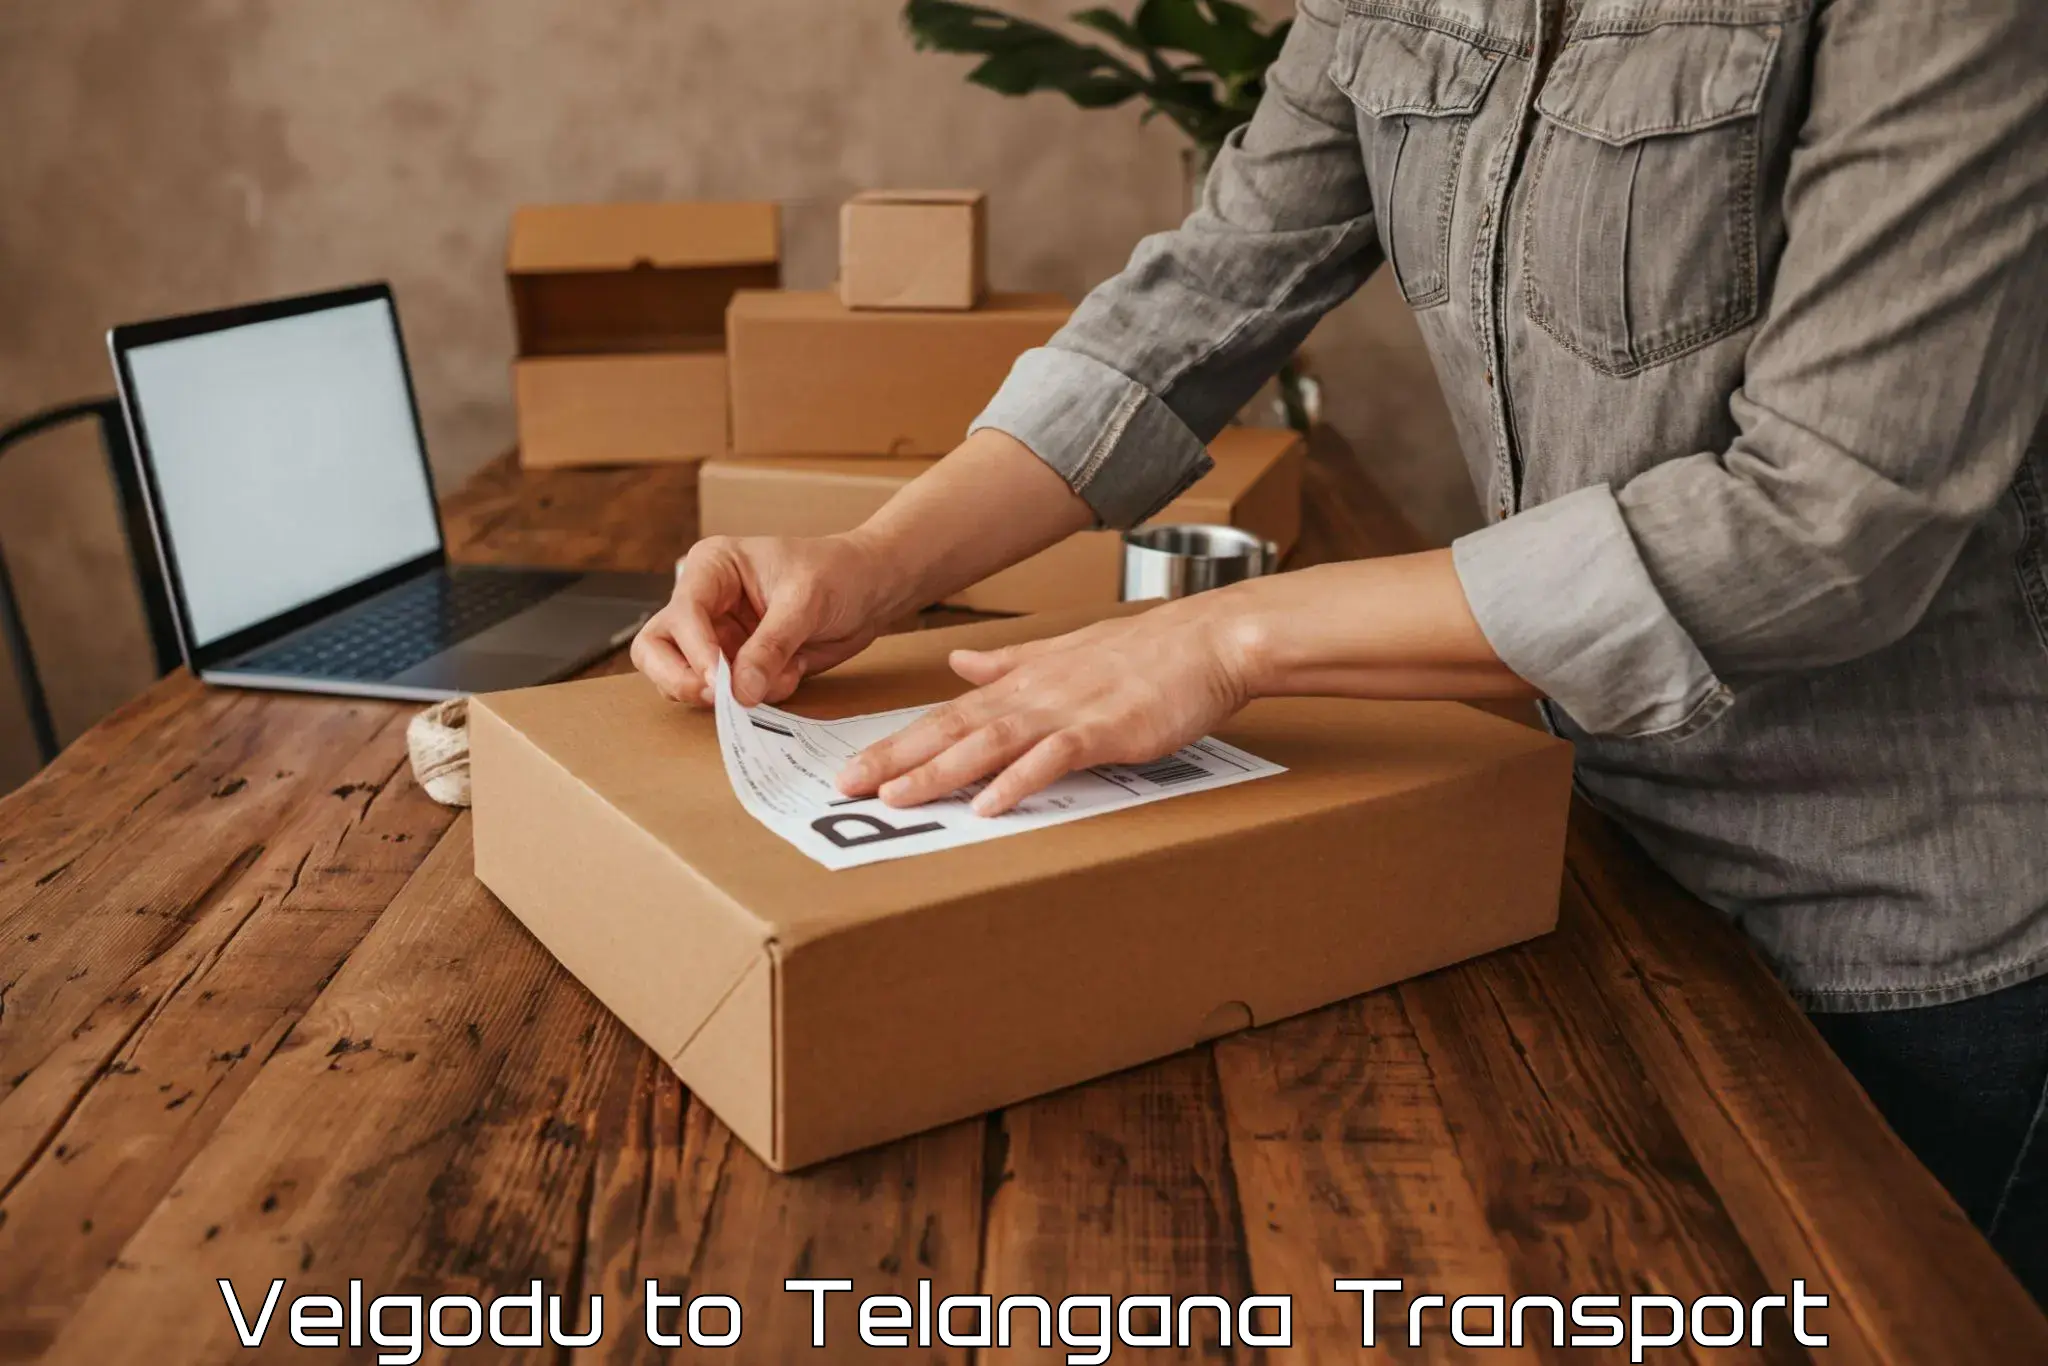 Two wheeler parcel service Velgodu to Mudigonda